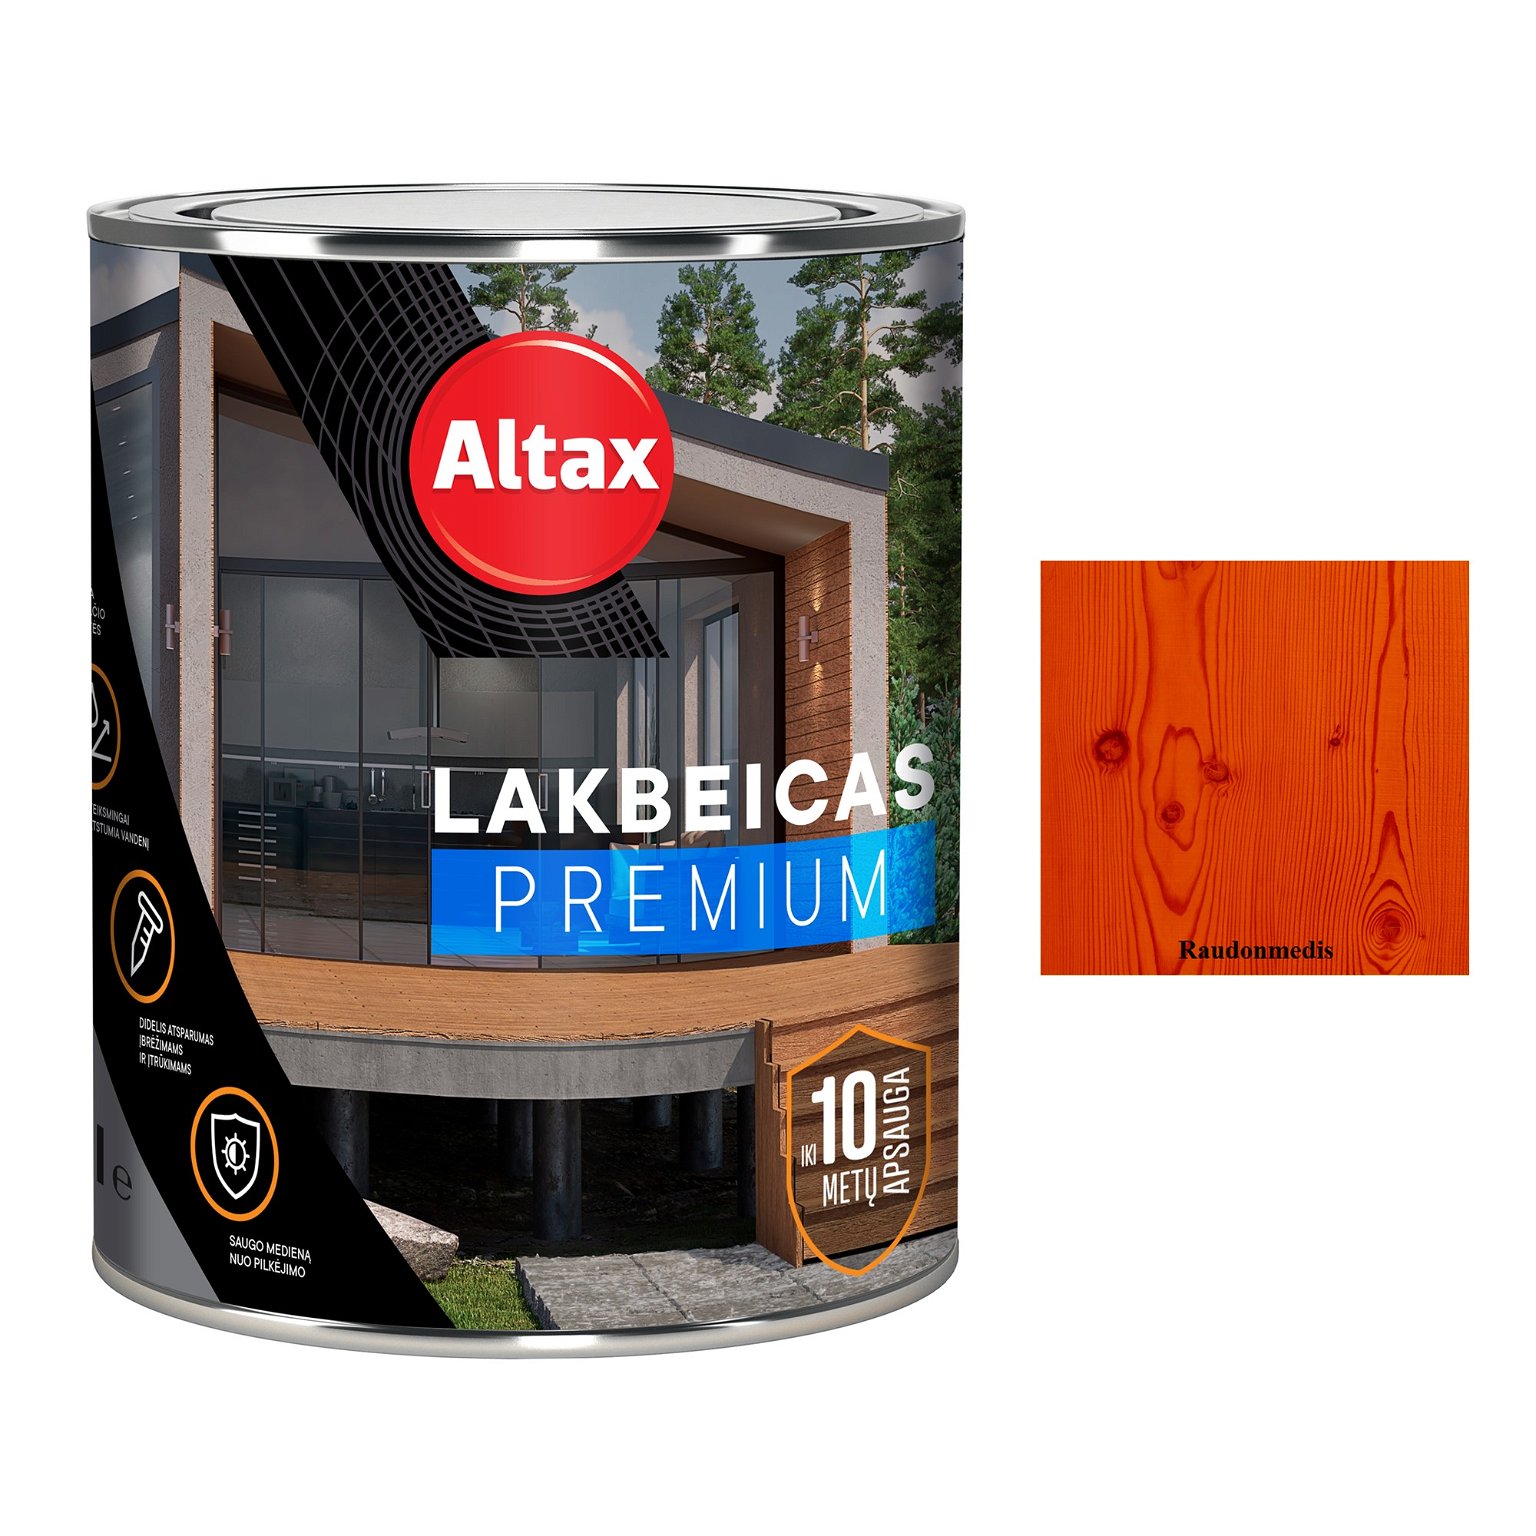 Medienos lakas su beicu ALTAX Premium, raudonmedžio sp., 750 ml